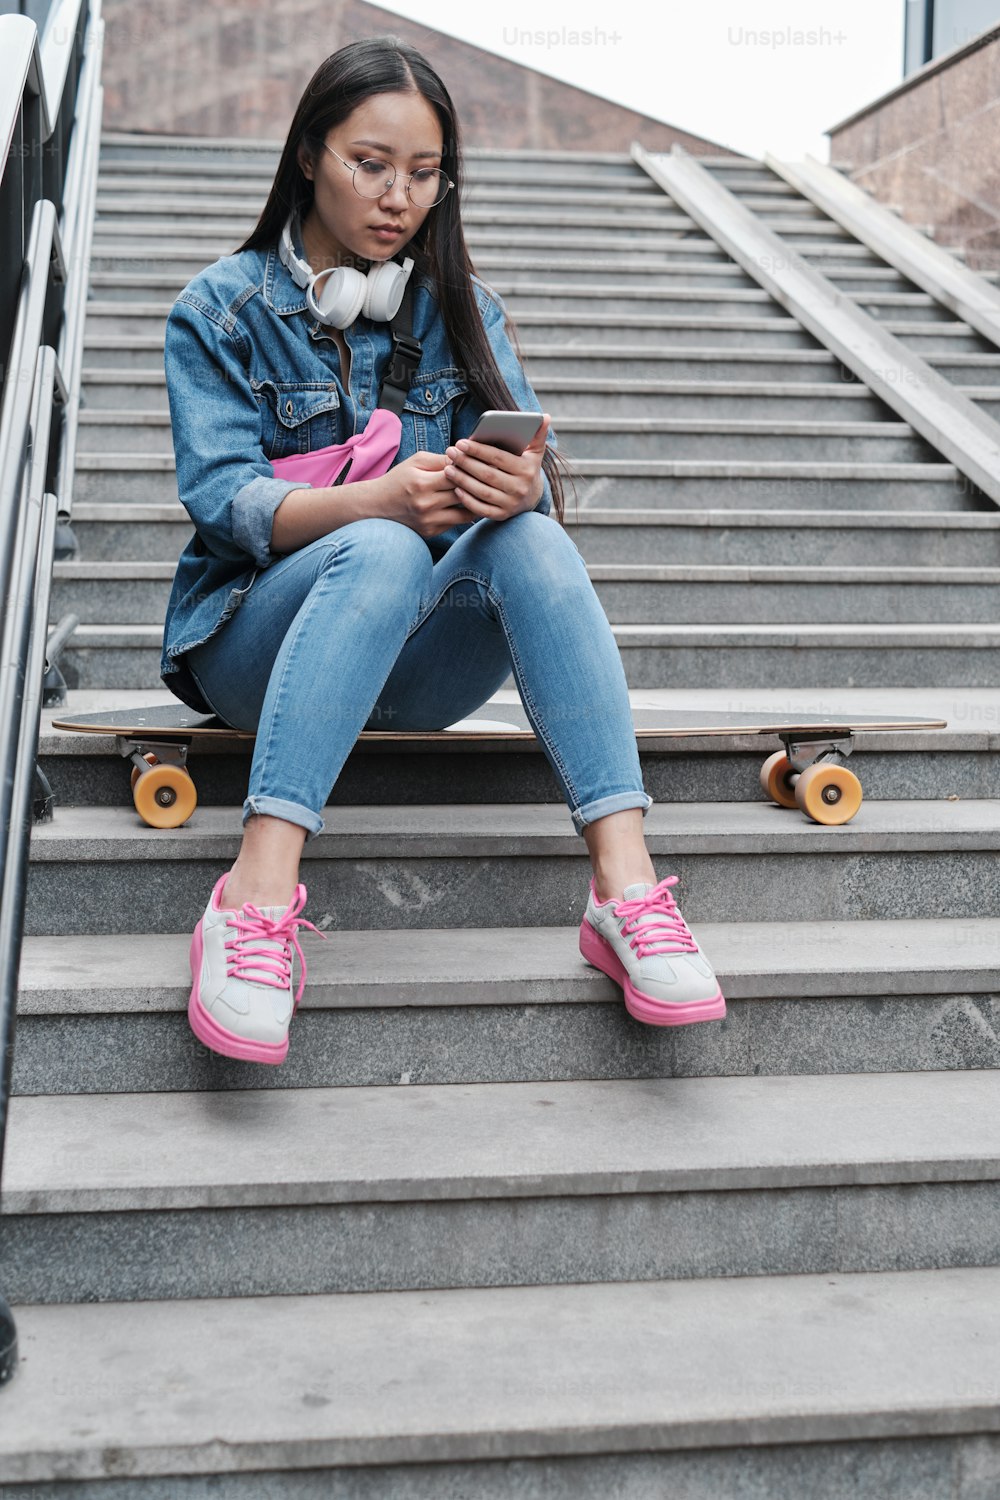 ロングボードを持った女の子が階段に座り、携帯電話の画面を見ている。